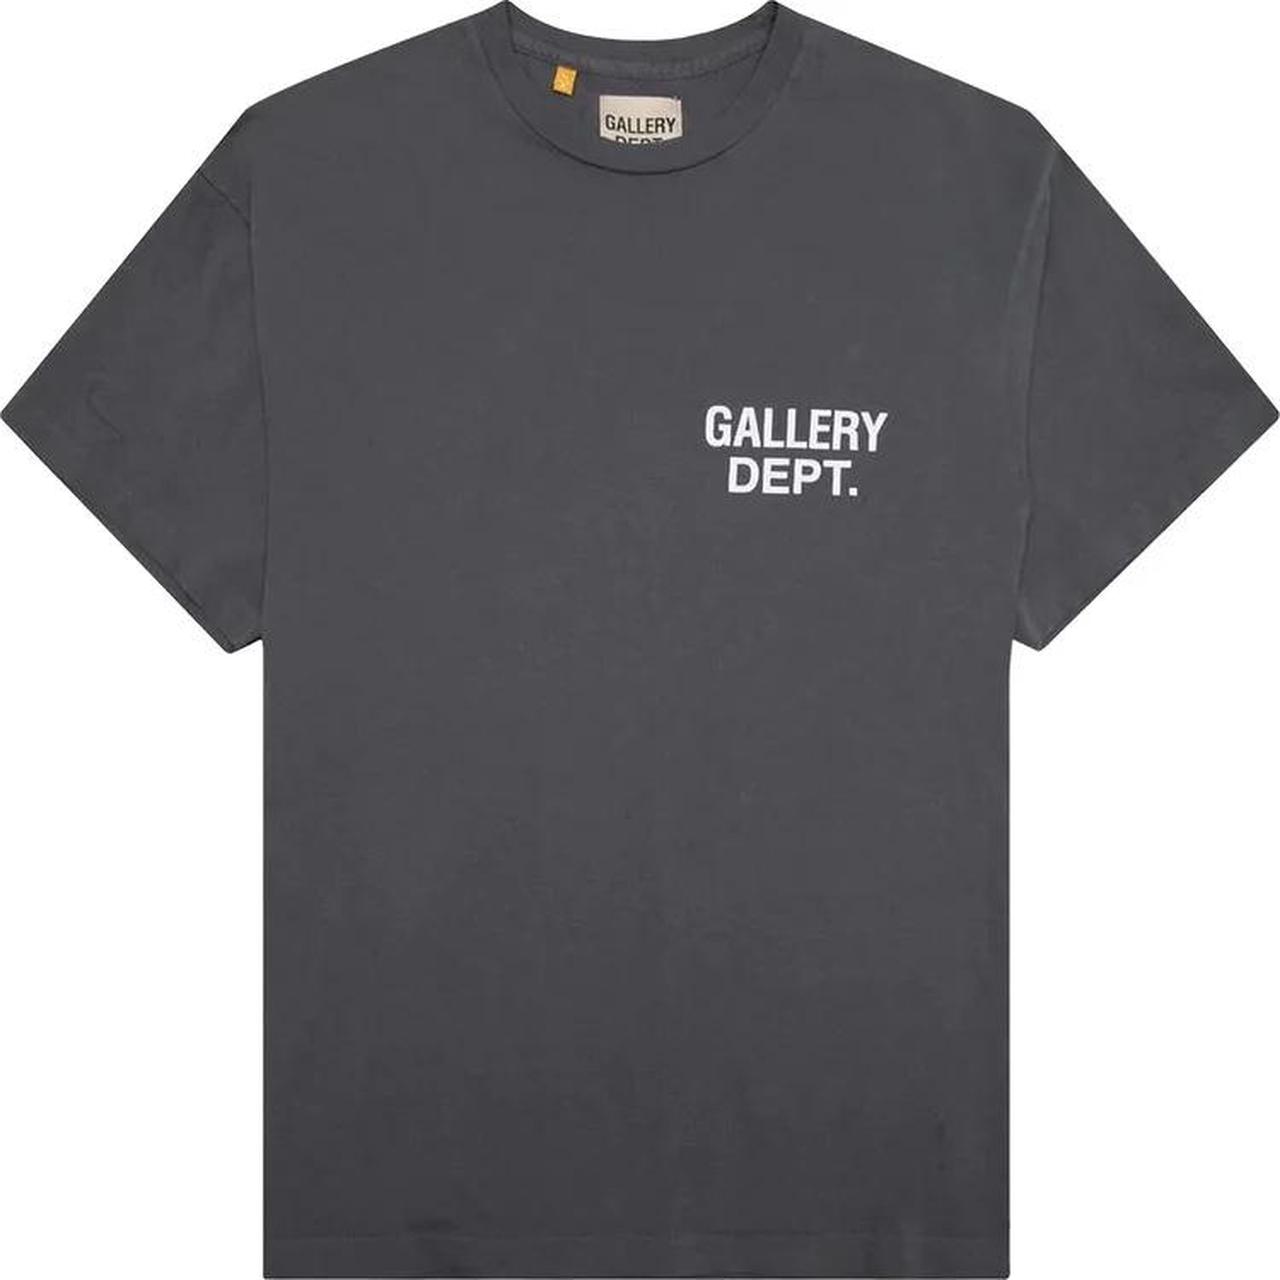 Gallery Dept. Men's Grey T-shirt | Depop